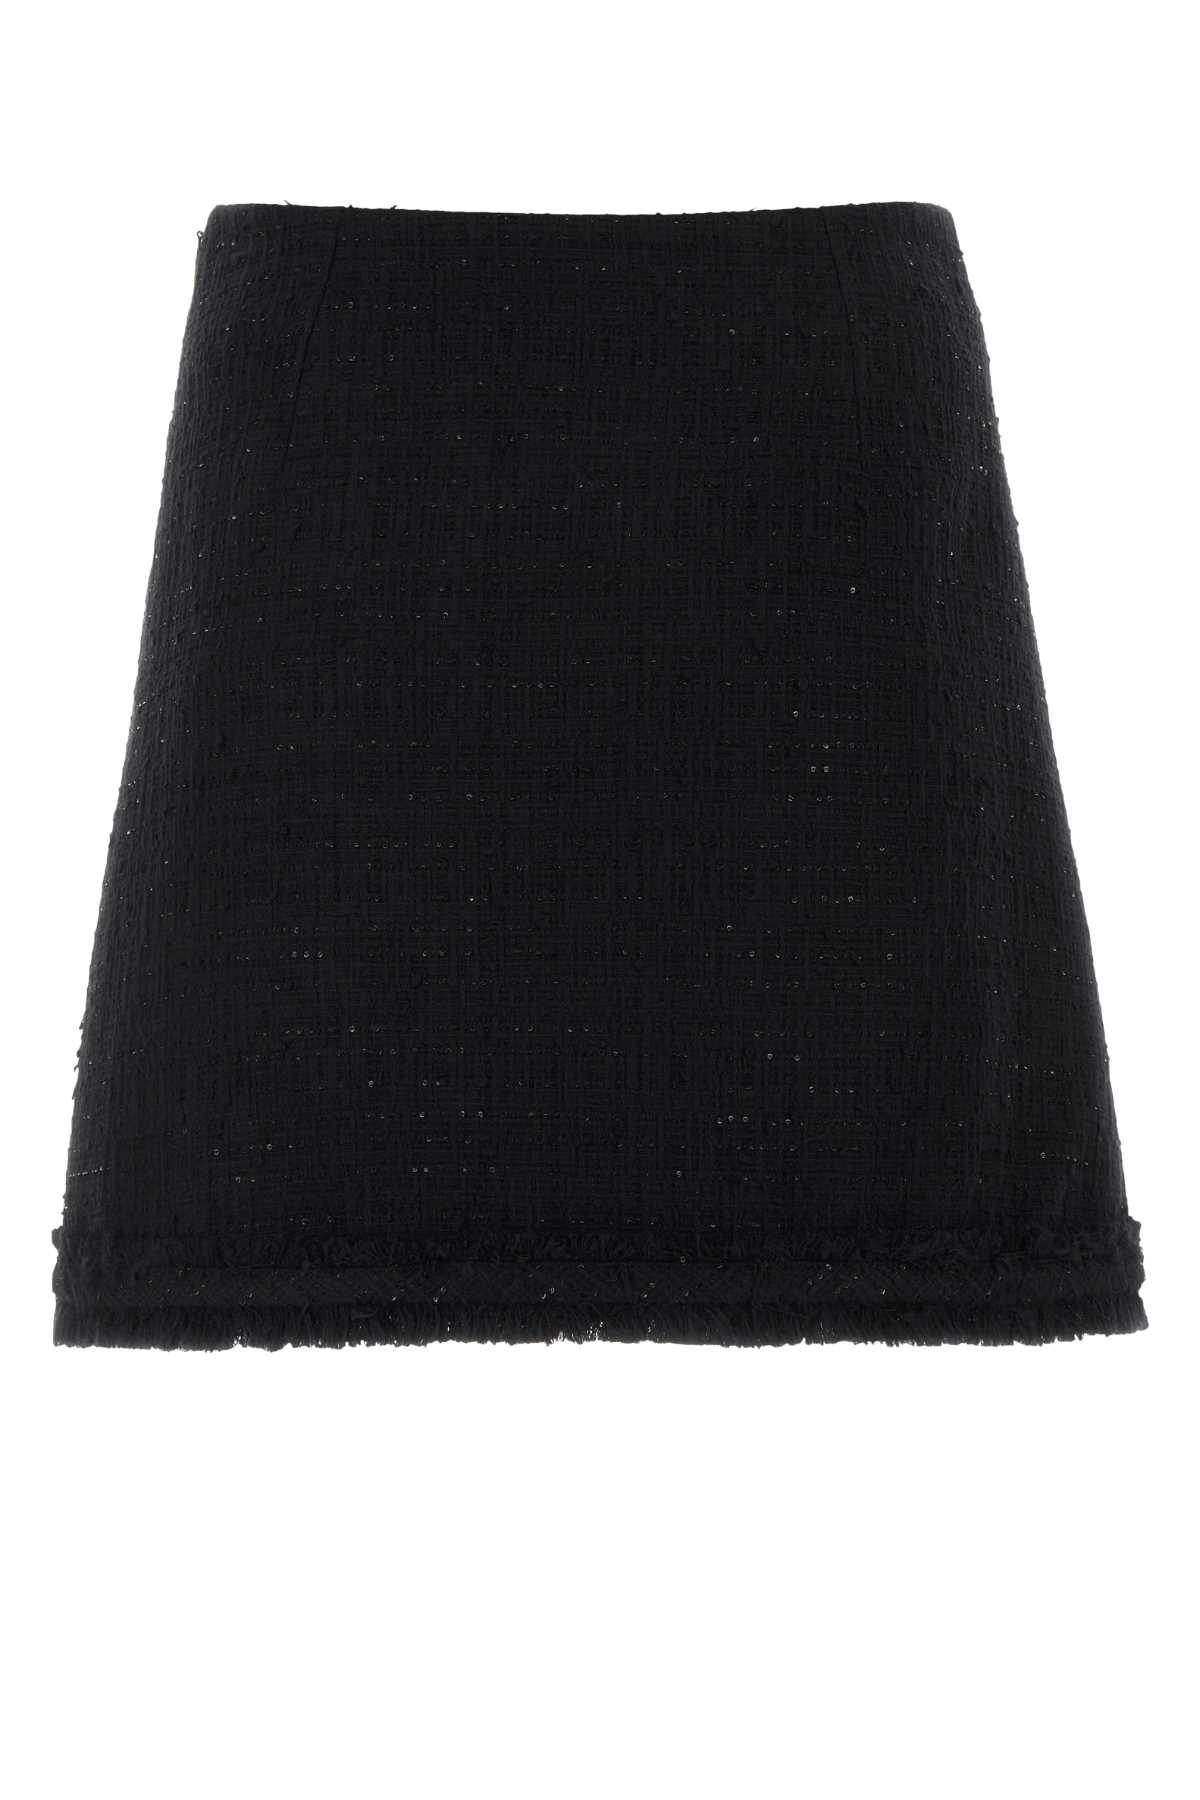 Shop Versace Black Tweed Mini Skirt